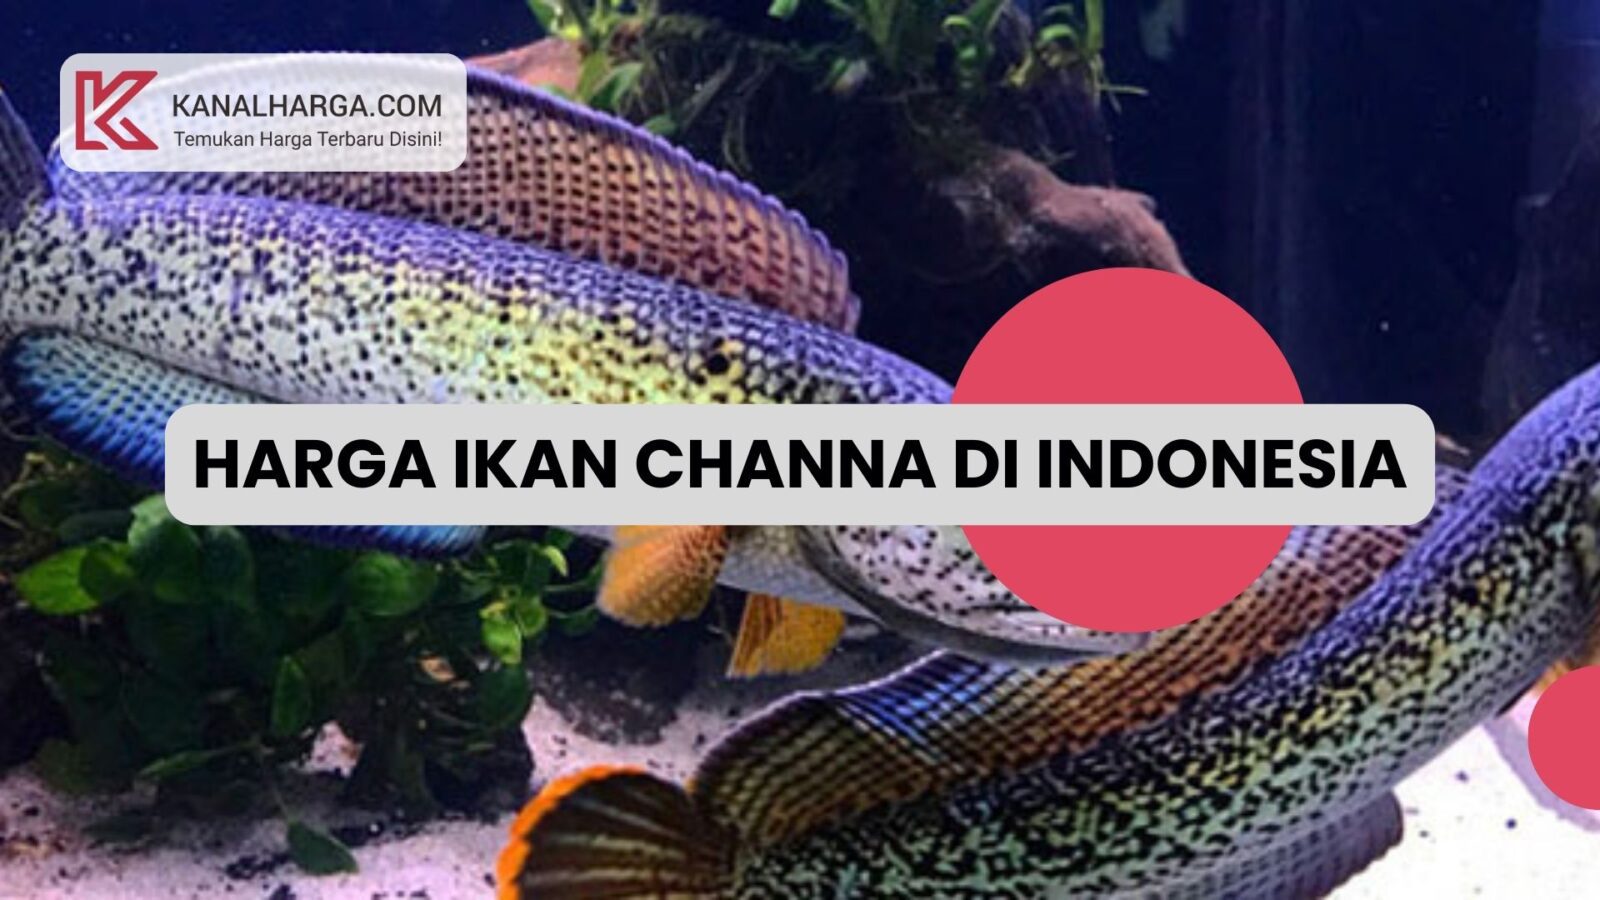 Harga Ikan Channa di Indonesia Harga Ikan Channa di Indonesia